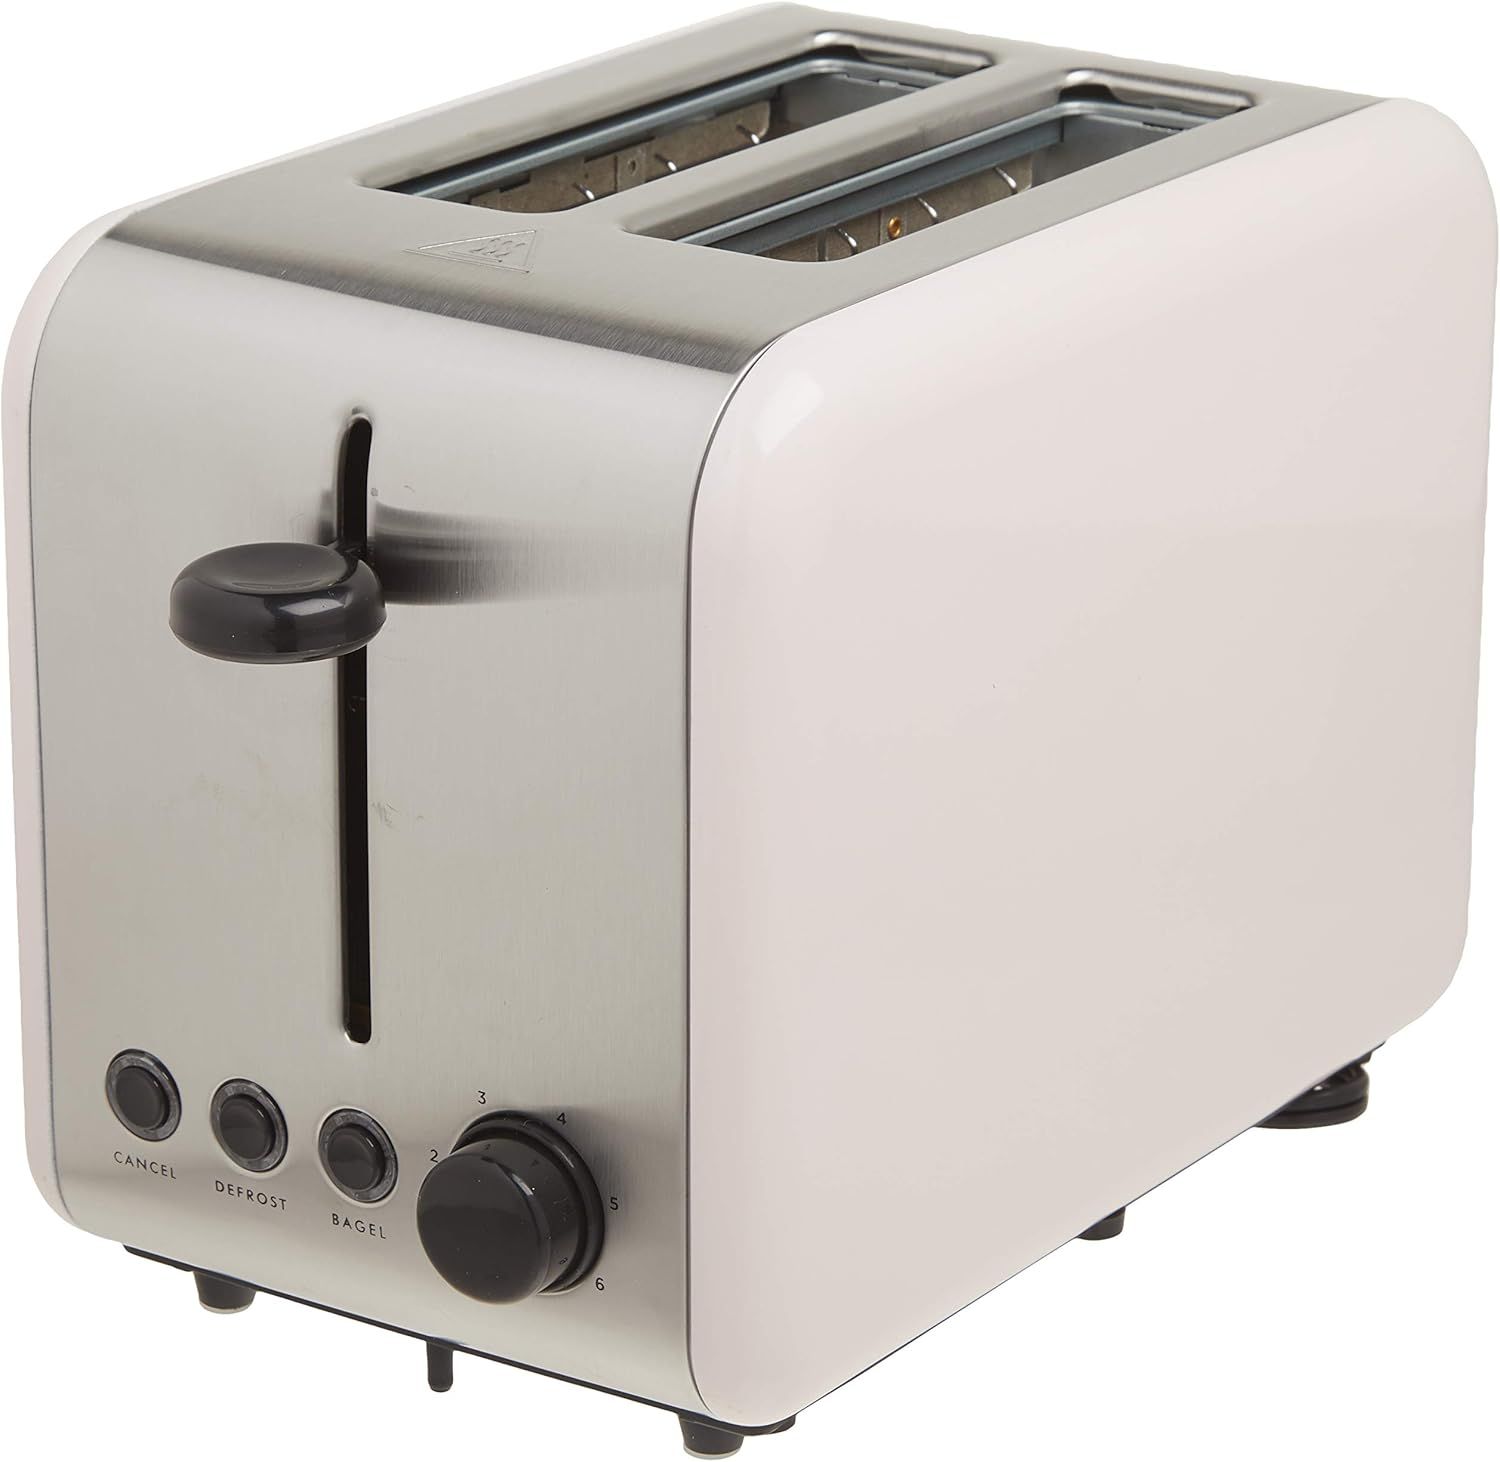 KATE SPADE 885786 Blush Toaster, 3.4 LB, Pink | Amazon (US)